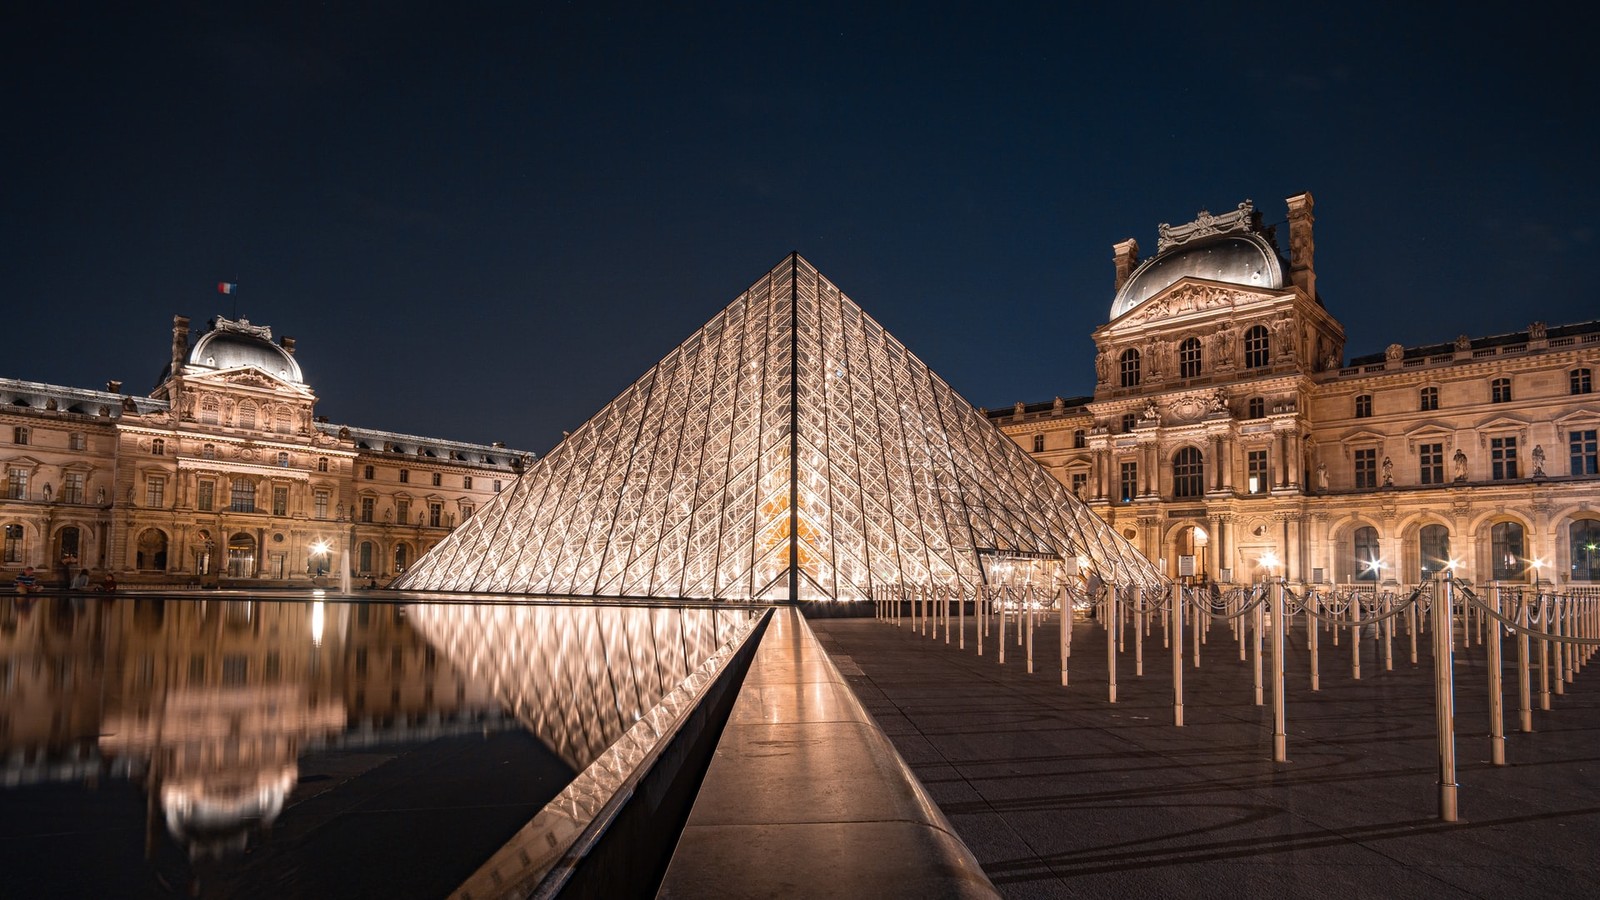 متحف اللوفر من أبرز معالم السياحة في باريس